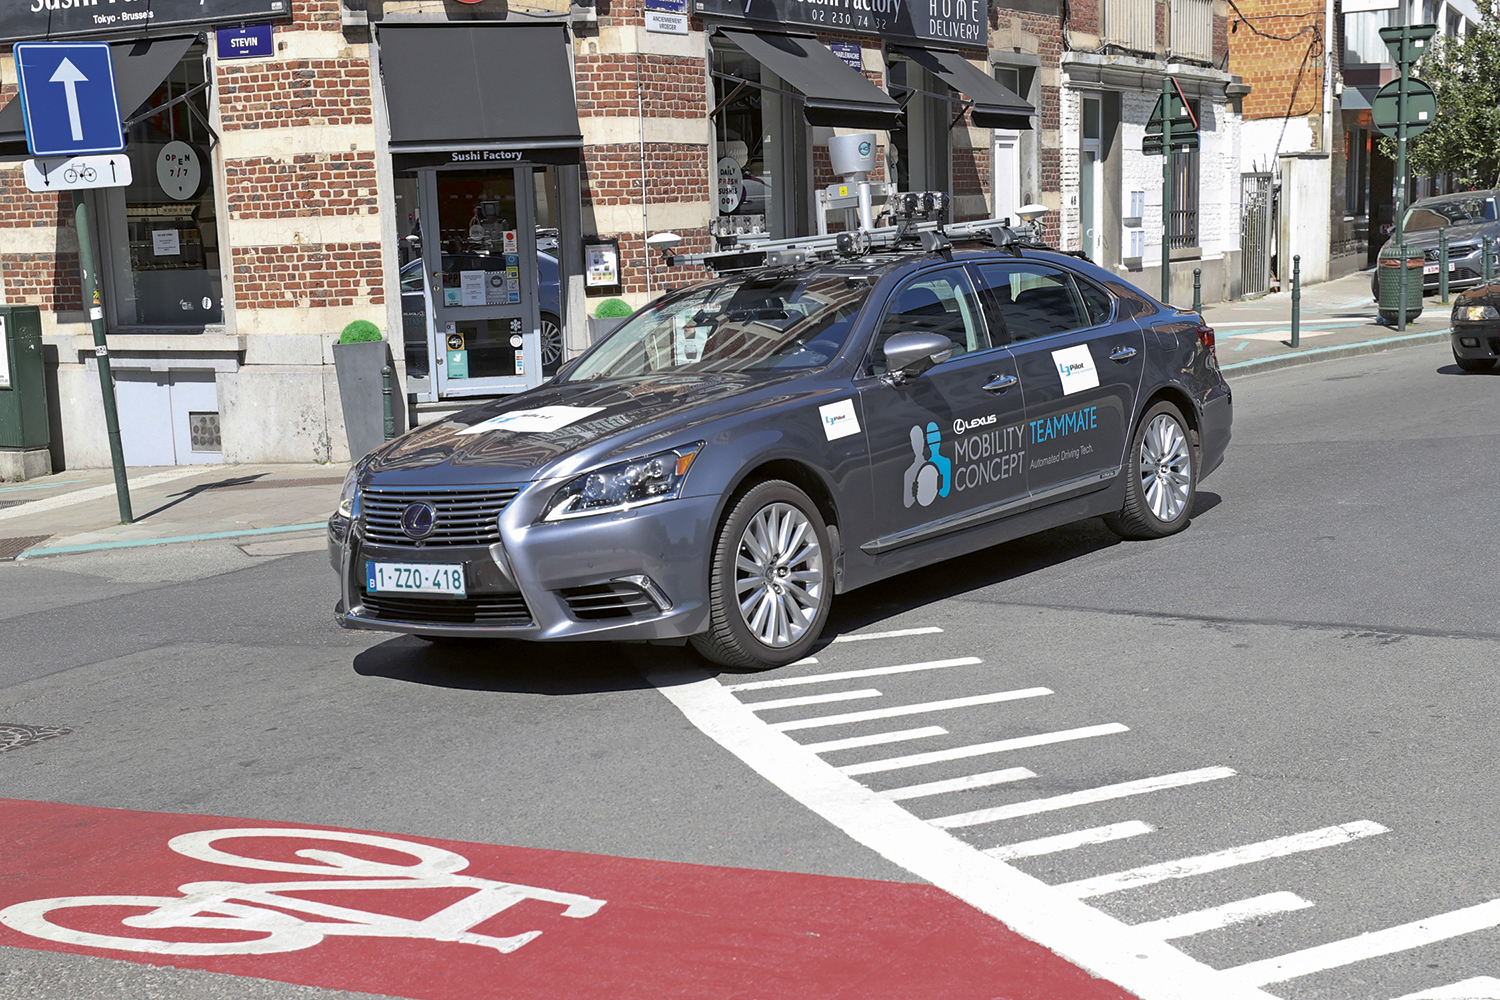 AUTONOMIA - Carro sem motorista: conexão com veículos e sensores nas ruas -